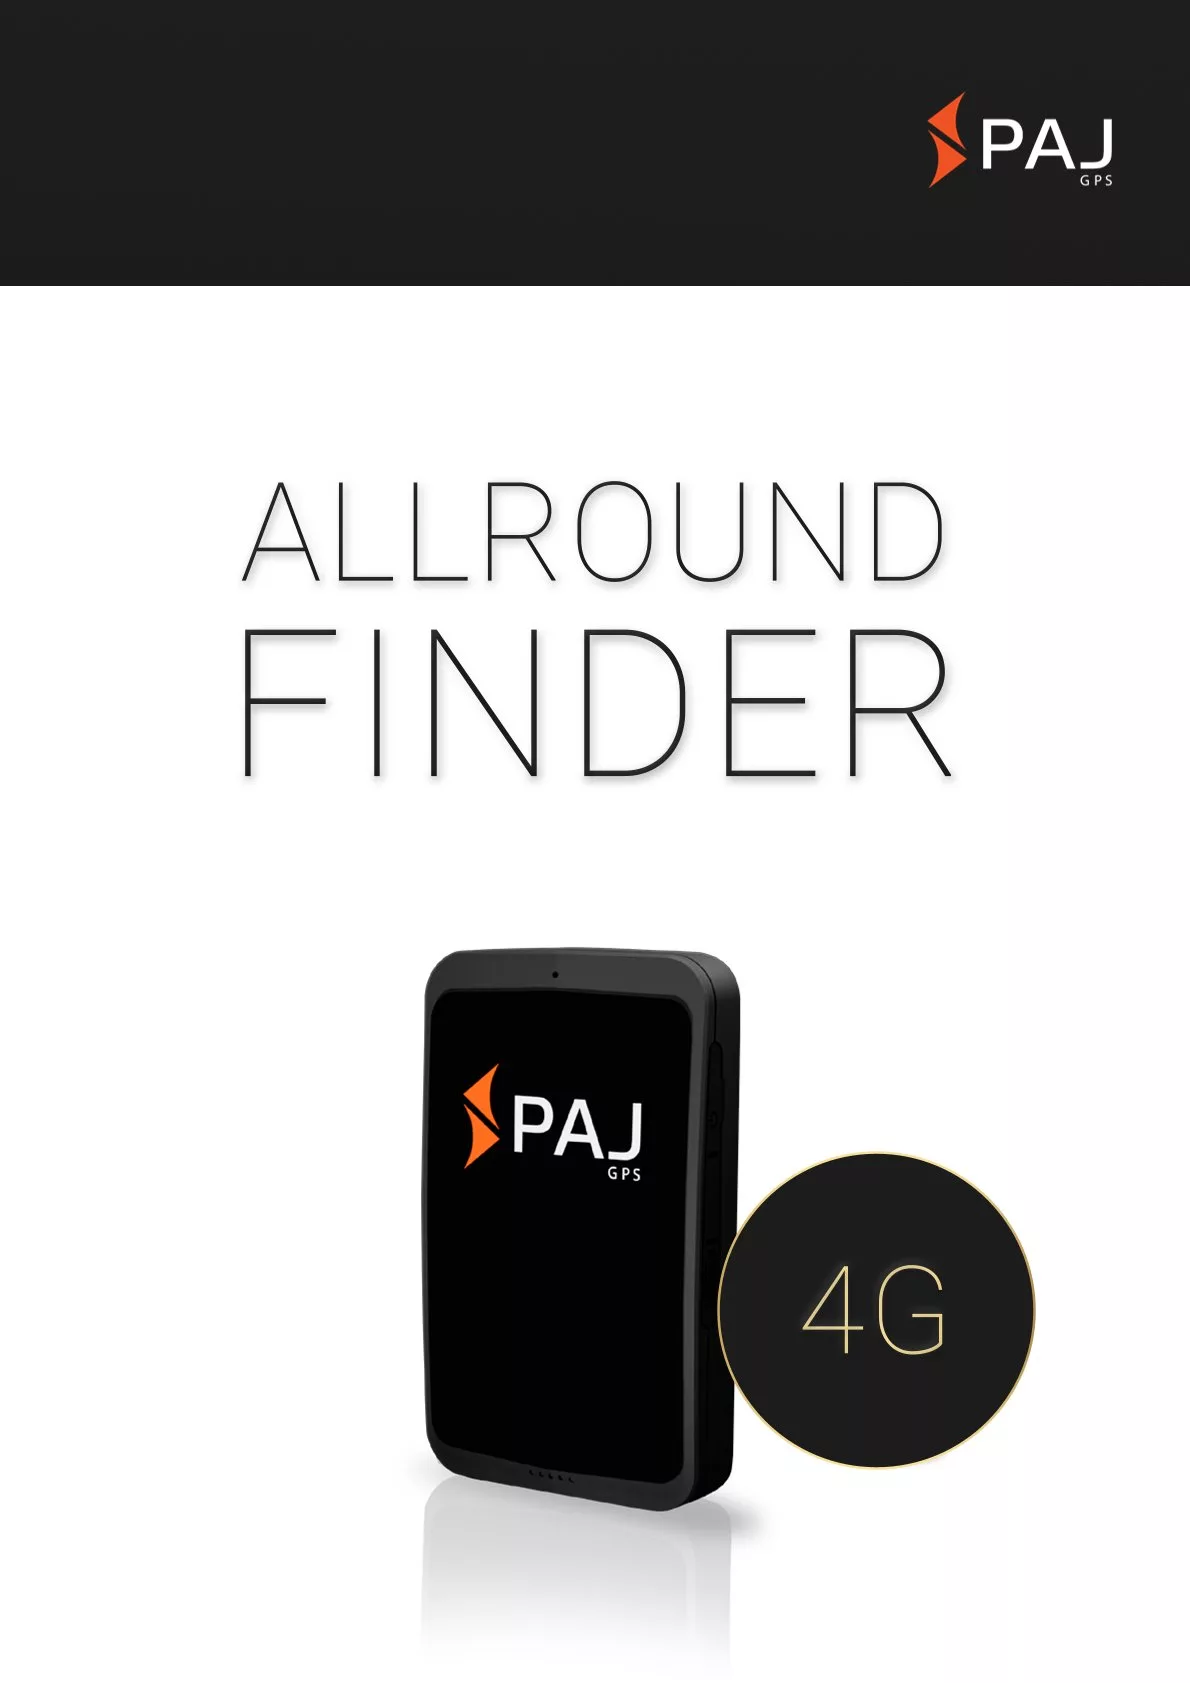 Imagem da capa para folha de dados ALLROUND Finder 4G